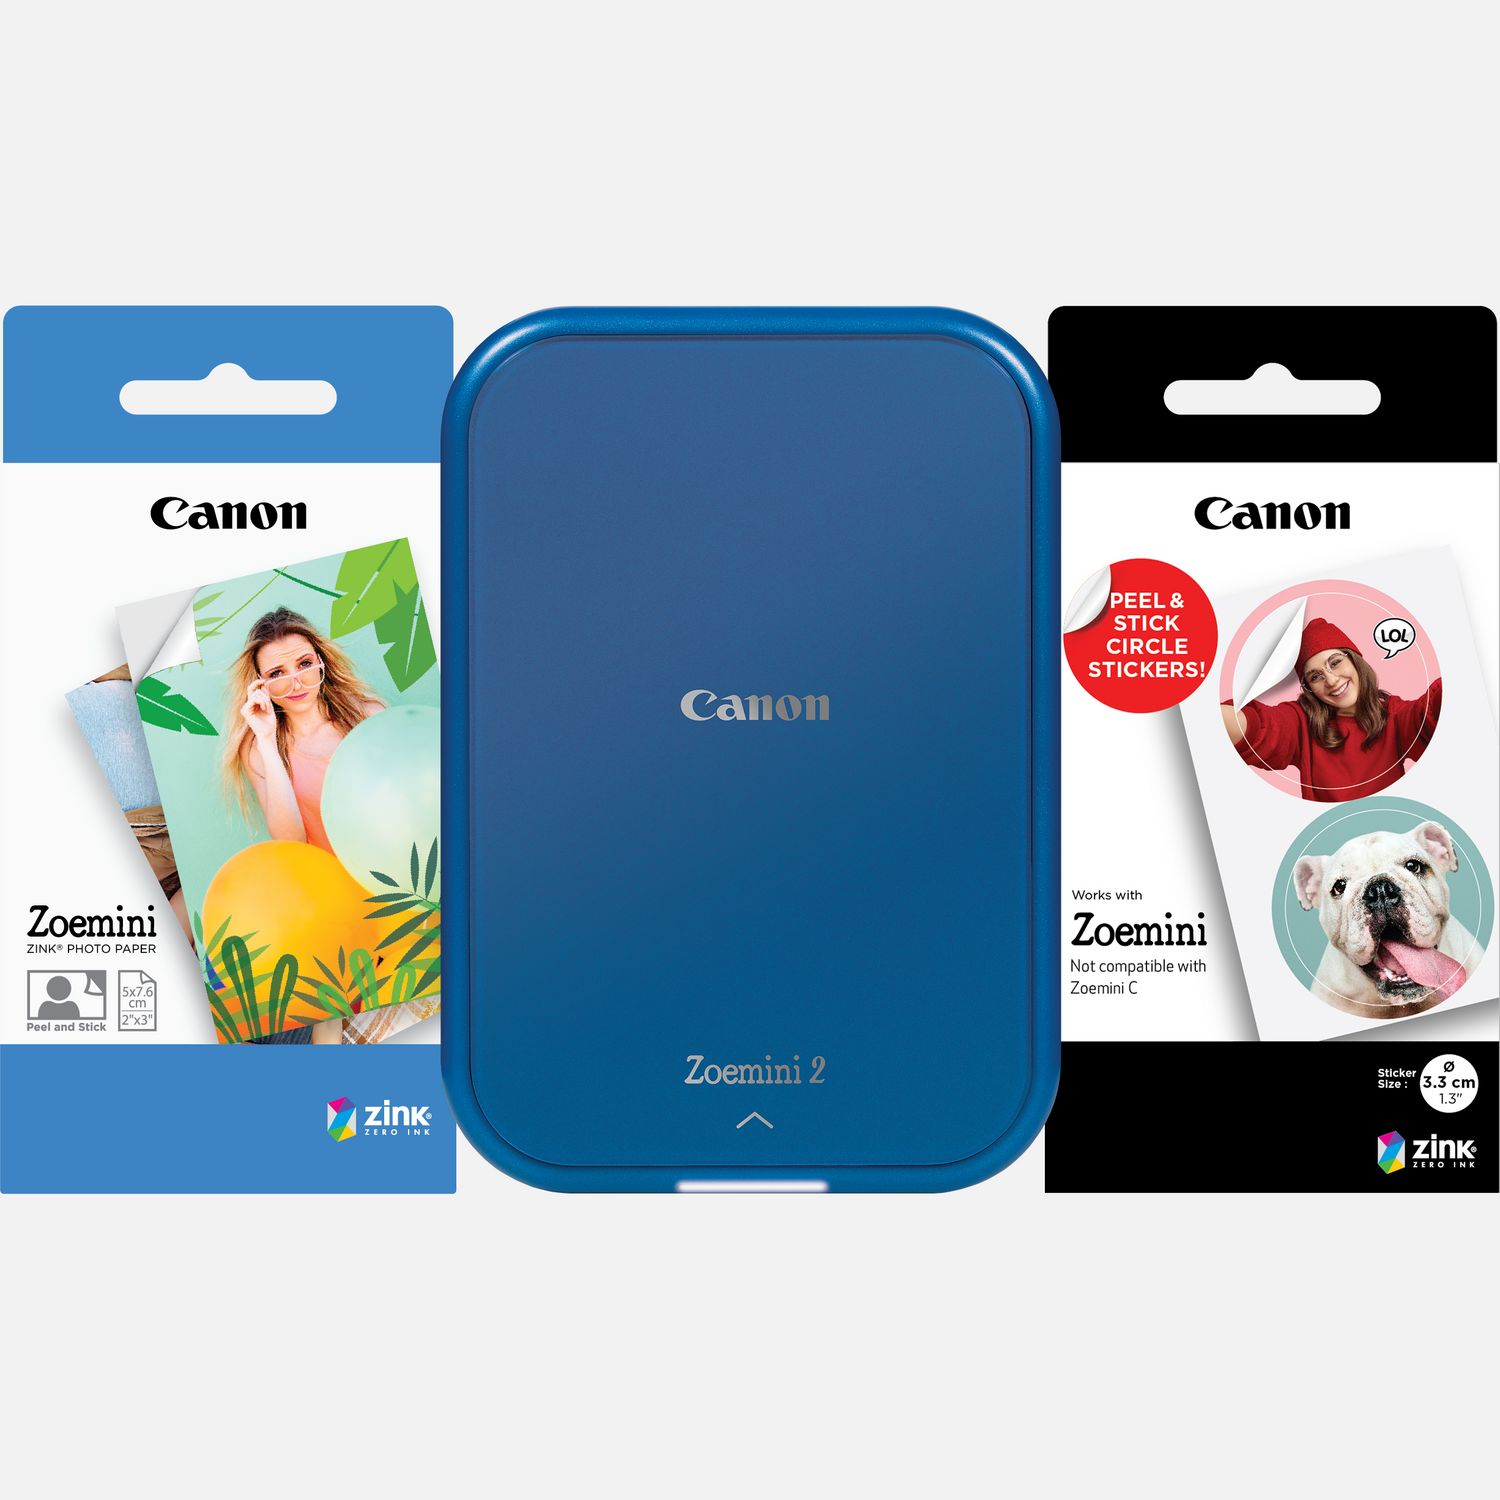 Image of Stampante fotografica portatile a colori Canon Zoemini 2, blu marino + Carta fotografica ZINK™ 5 x 7,6 cm (20 fogli) + Carta adesiva circolare ZINK™ 3,3 cm (10 fogli)